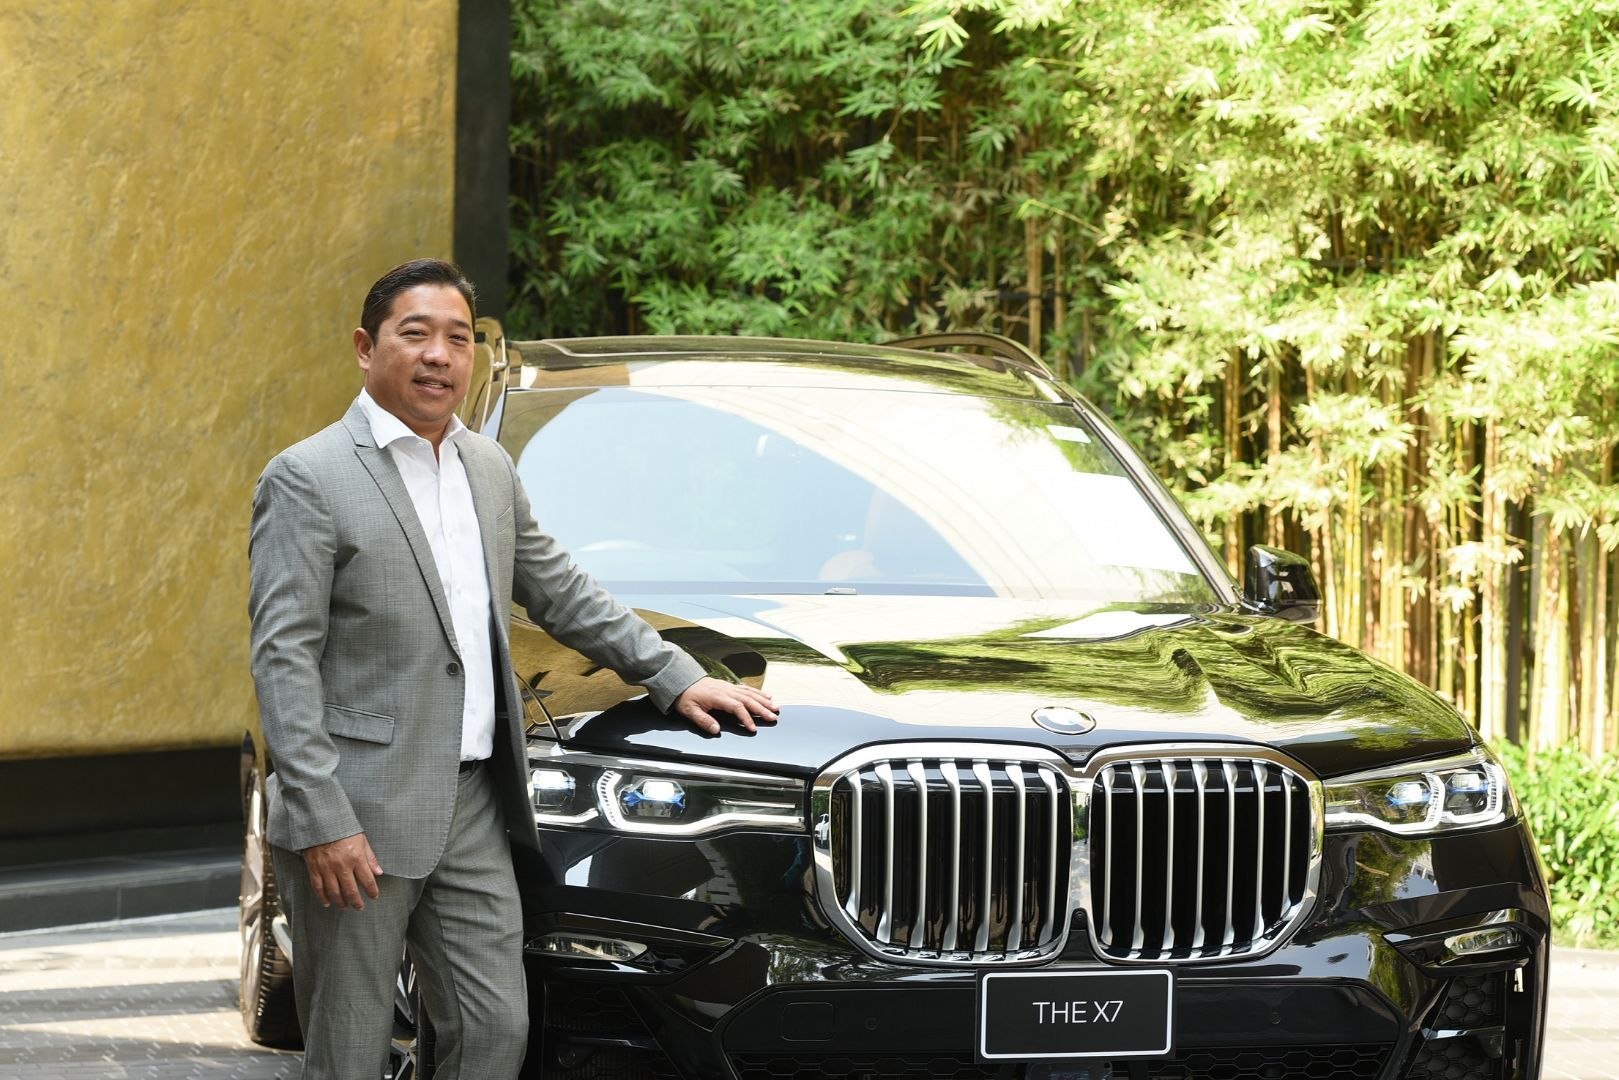 มิลเลนเนียม ออโต้ เขย่าบัลลังค์รถอเนกประสงค์ระดับผู้นำ กับ BMW X7 รุ่นประกอบในประเทศ หรูหรามาเต็ม พร้อมความคุ้มค่าสูงสุด